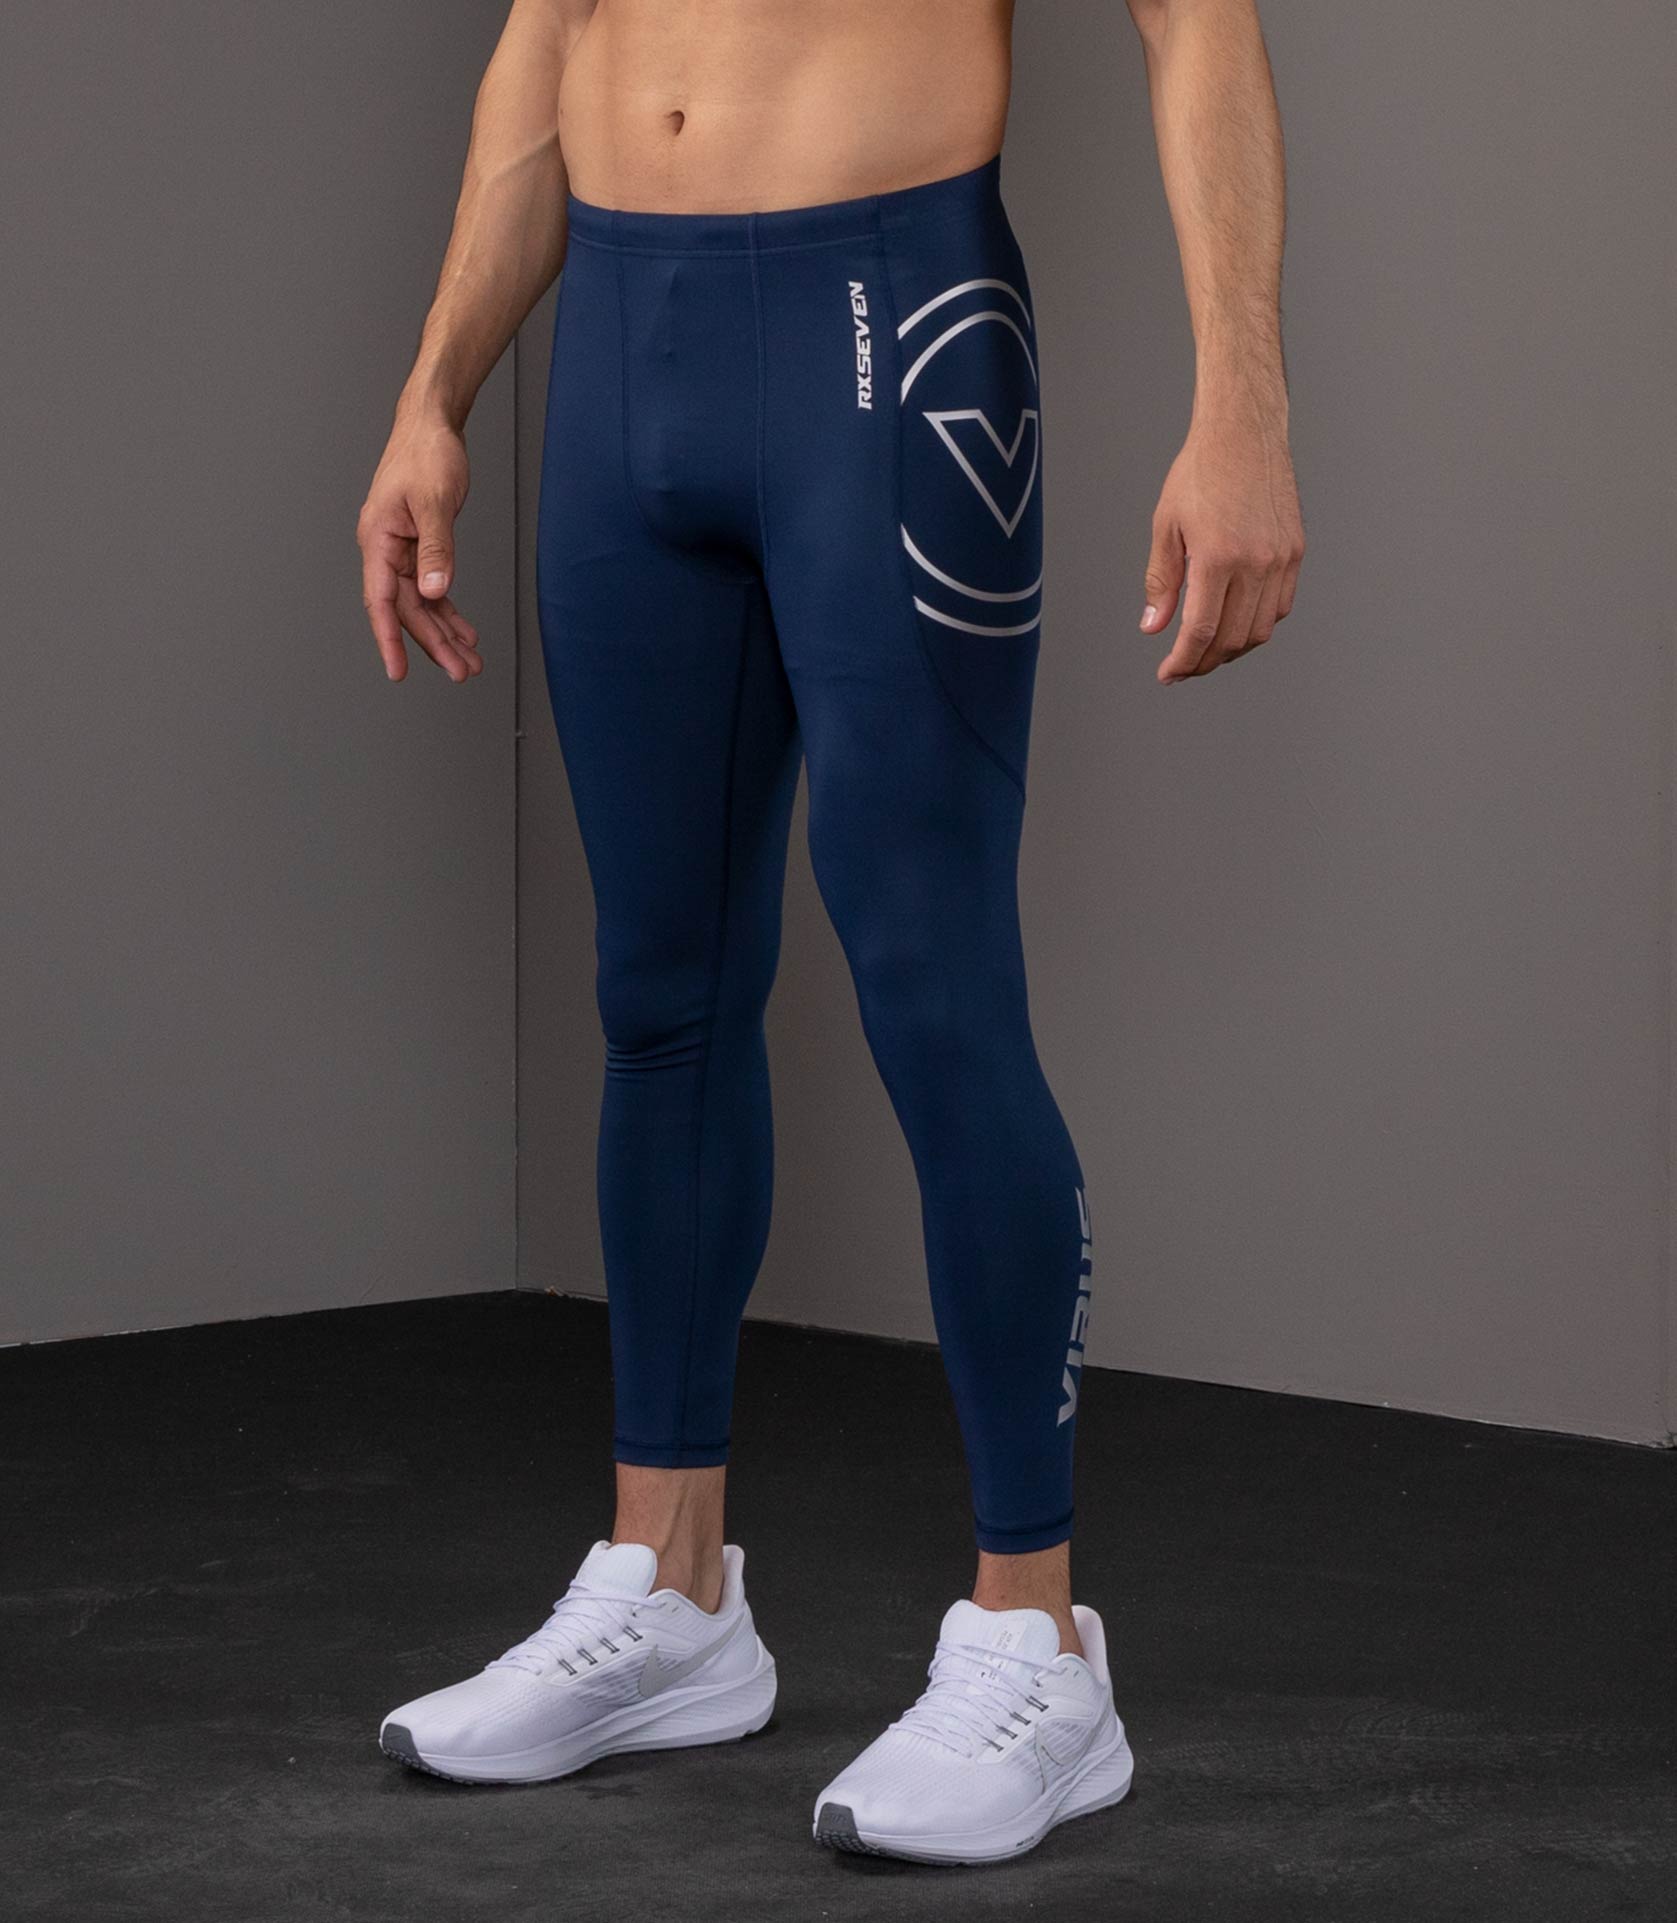 Unboxing  RX8 Tech Pants Men's Cool Jade™ VIRUS Compression Pants 